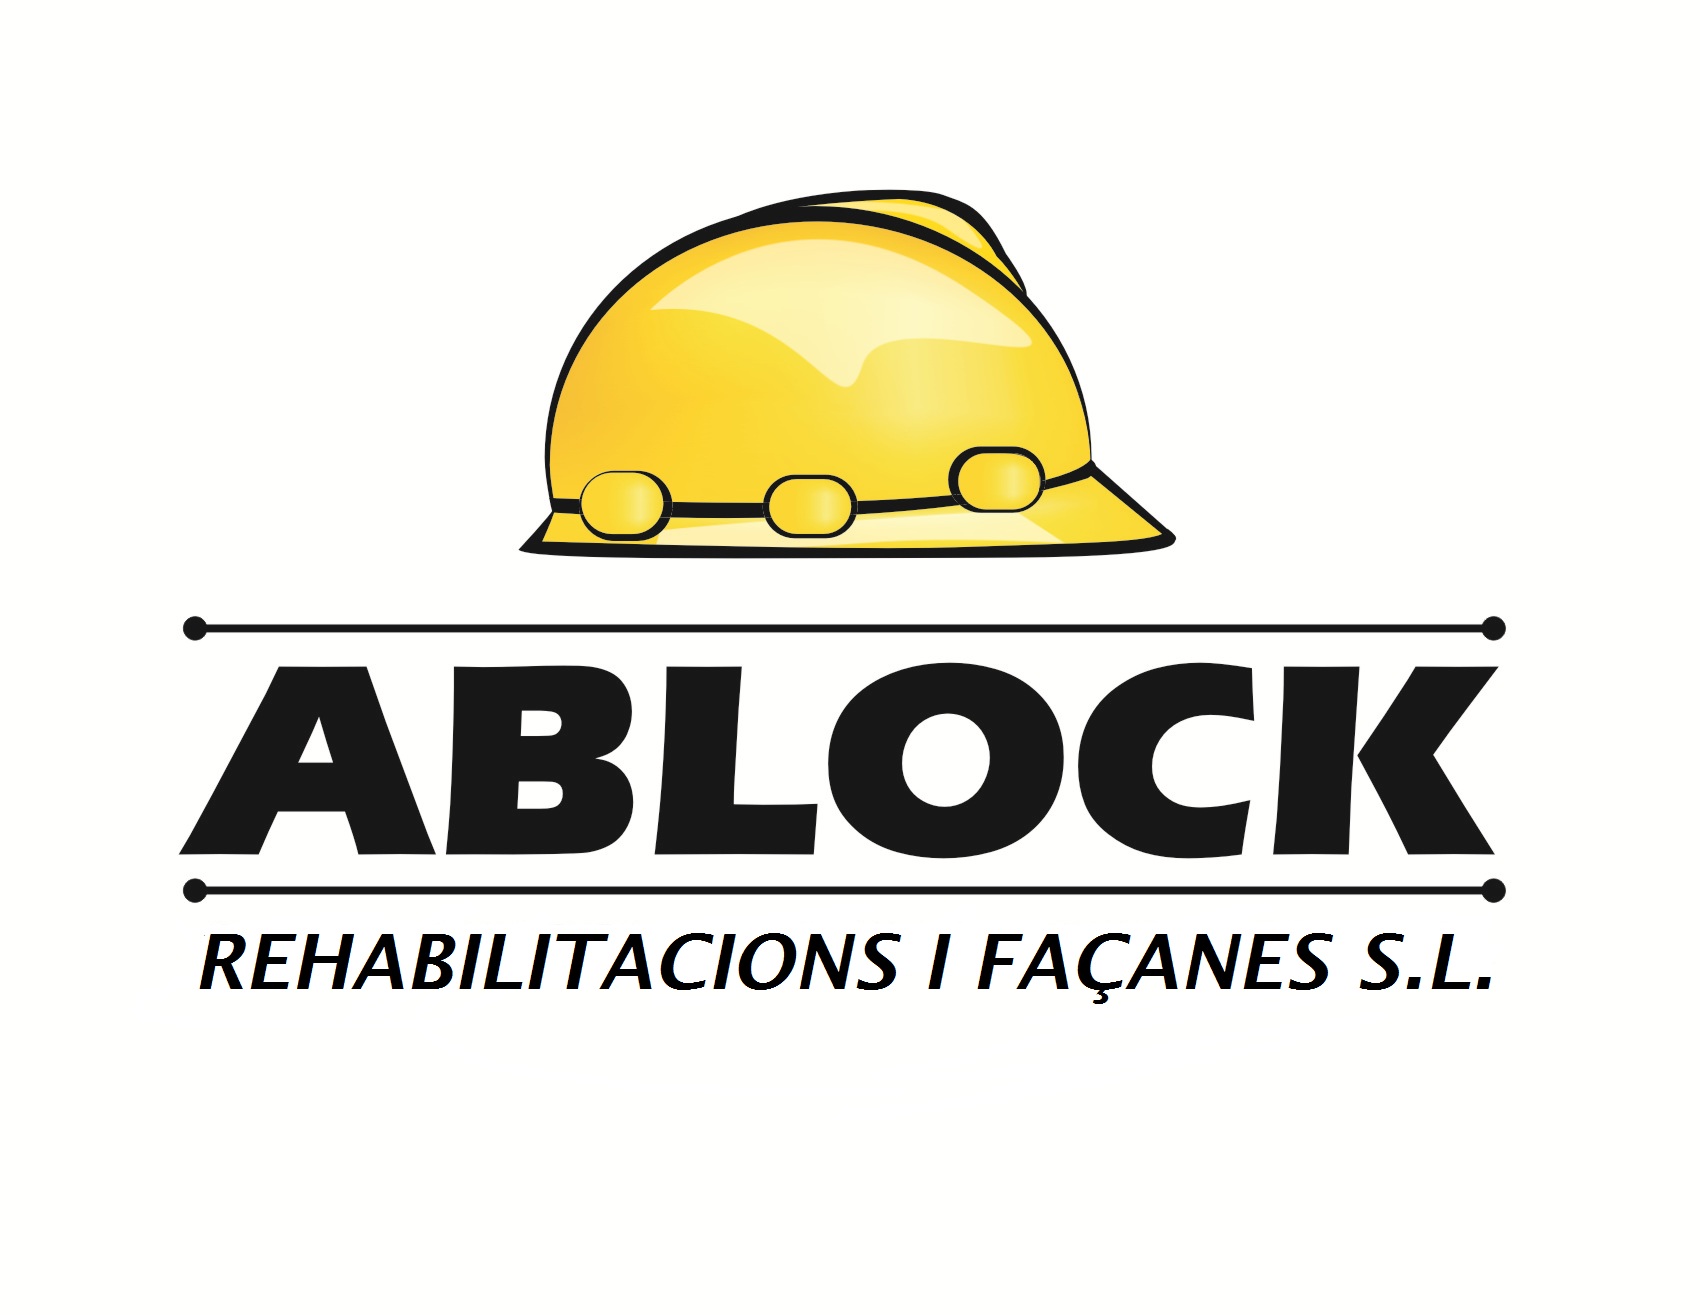 ABlock.es rehabilitación de edificios y fachadas en Barcelona